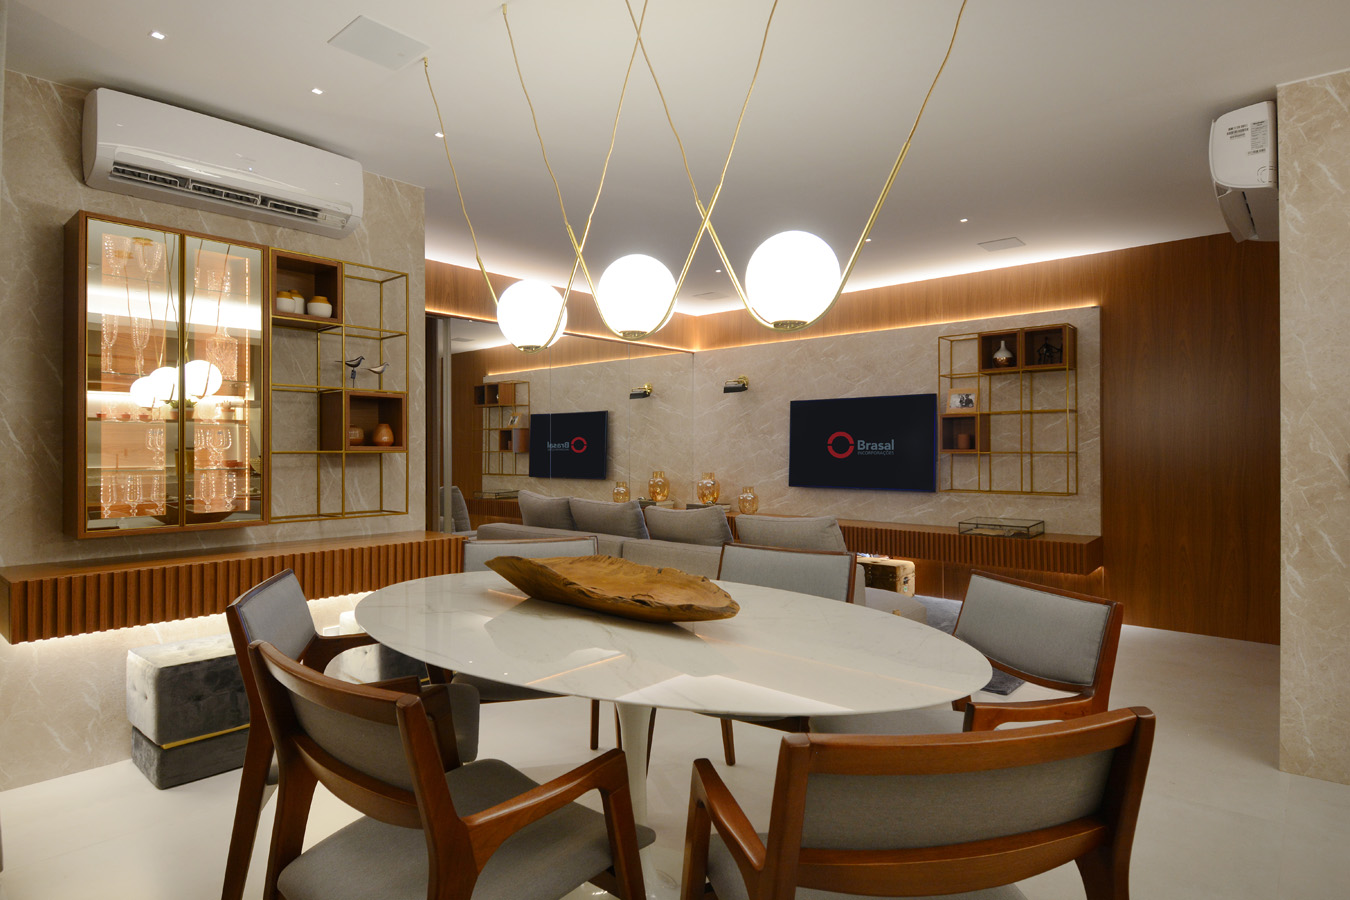 Sala de jantar e de estar do Moove Home Brasal, com a madeira integrada com os demais elementos - Marcus Camargo